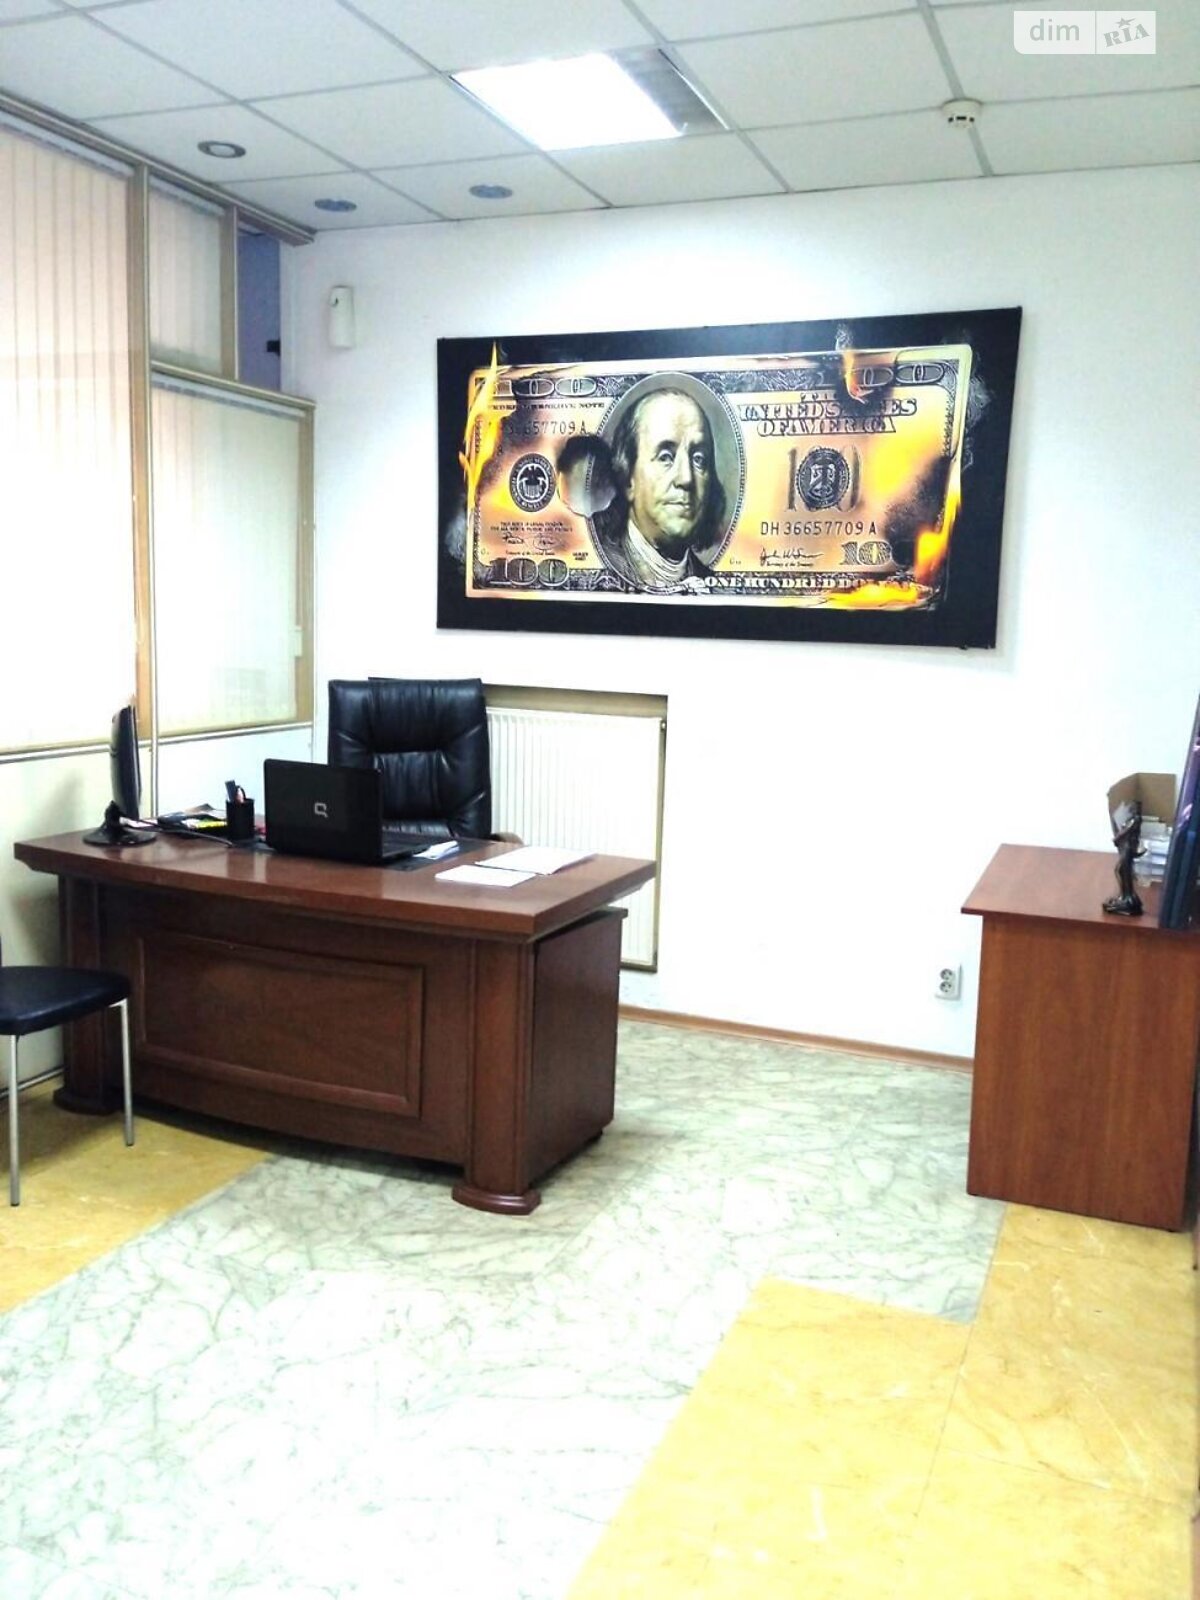 Офисное помещение на 67 кв.м. в Харькове фото 1